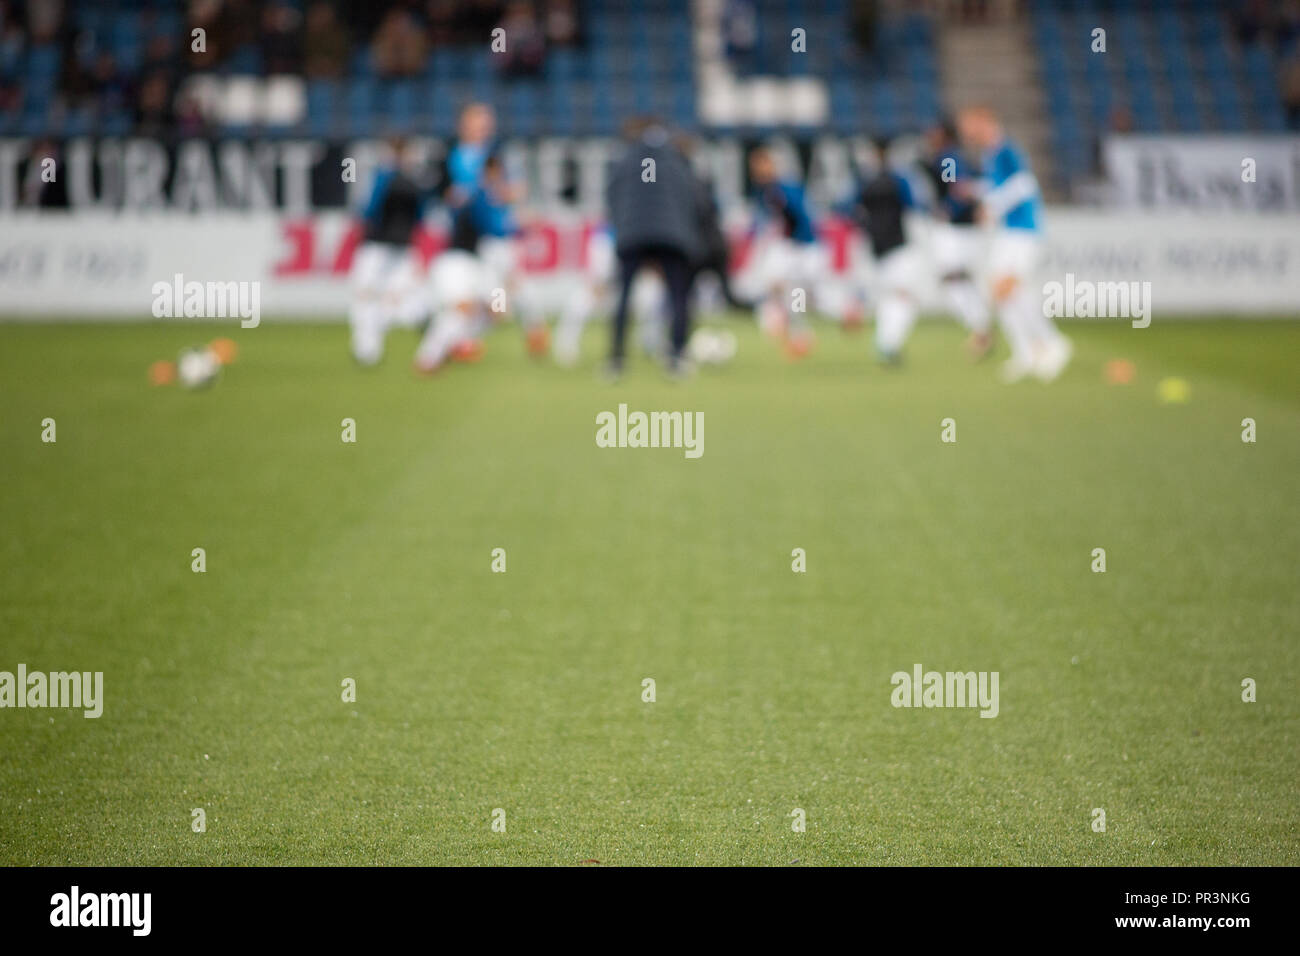 Une équipe de football se prépare à jouer un match. Banque D'Images